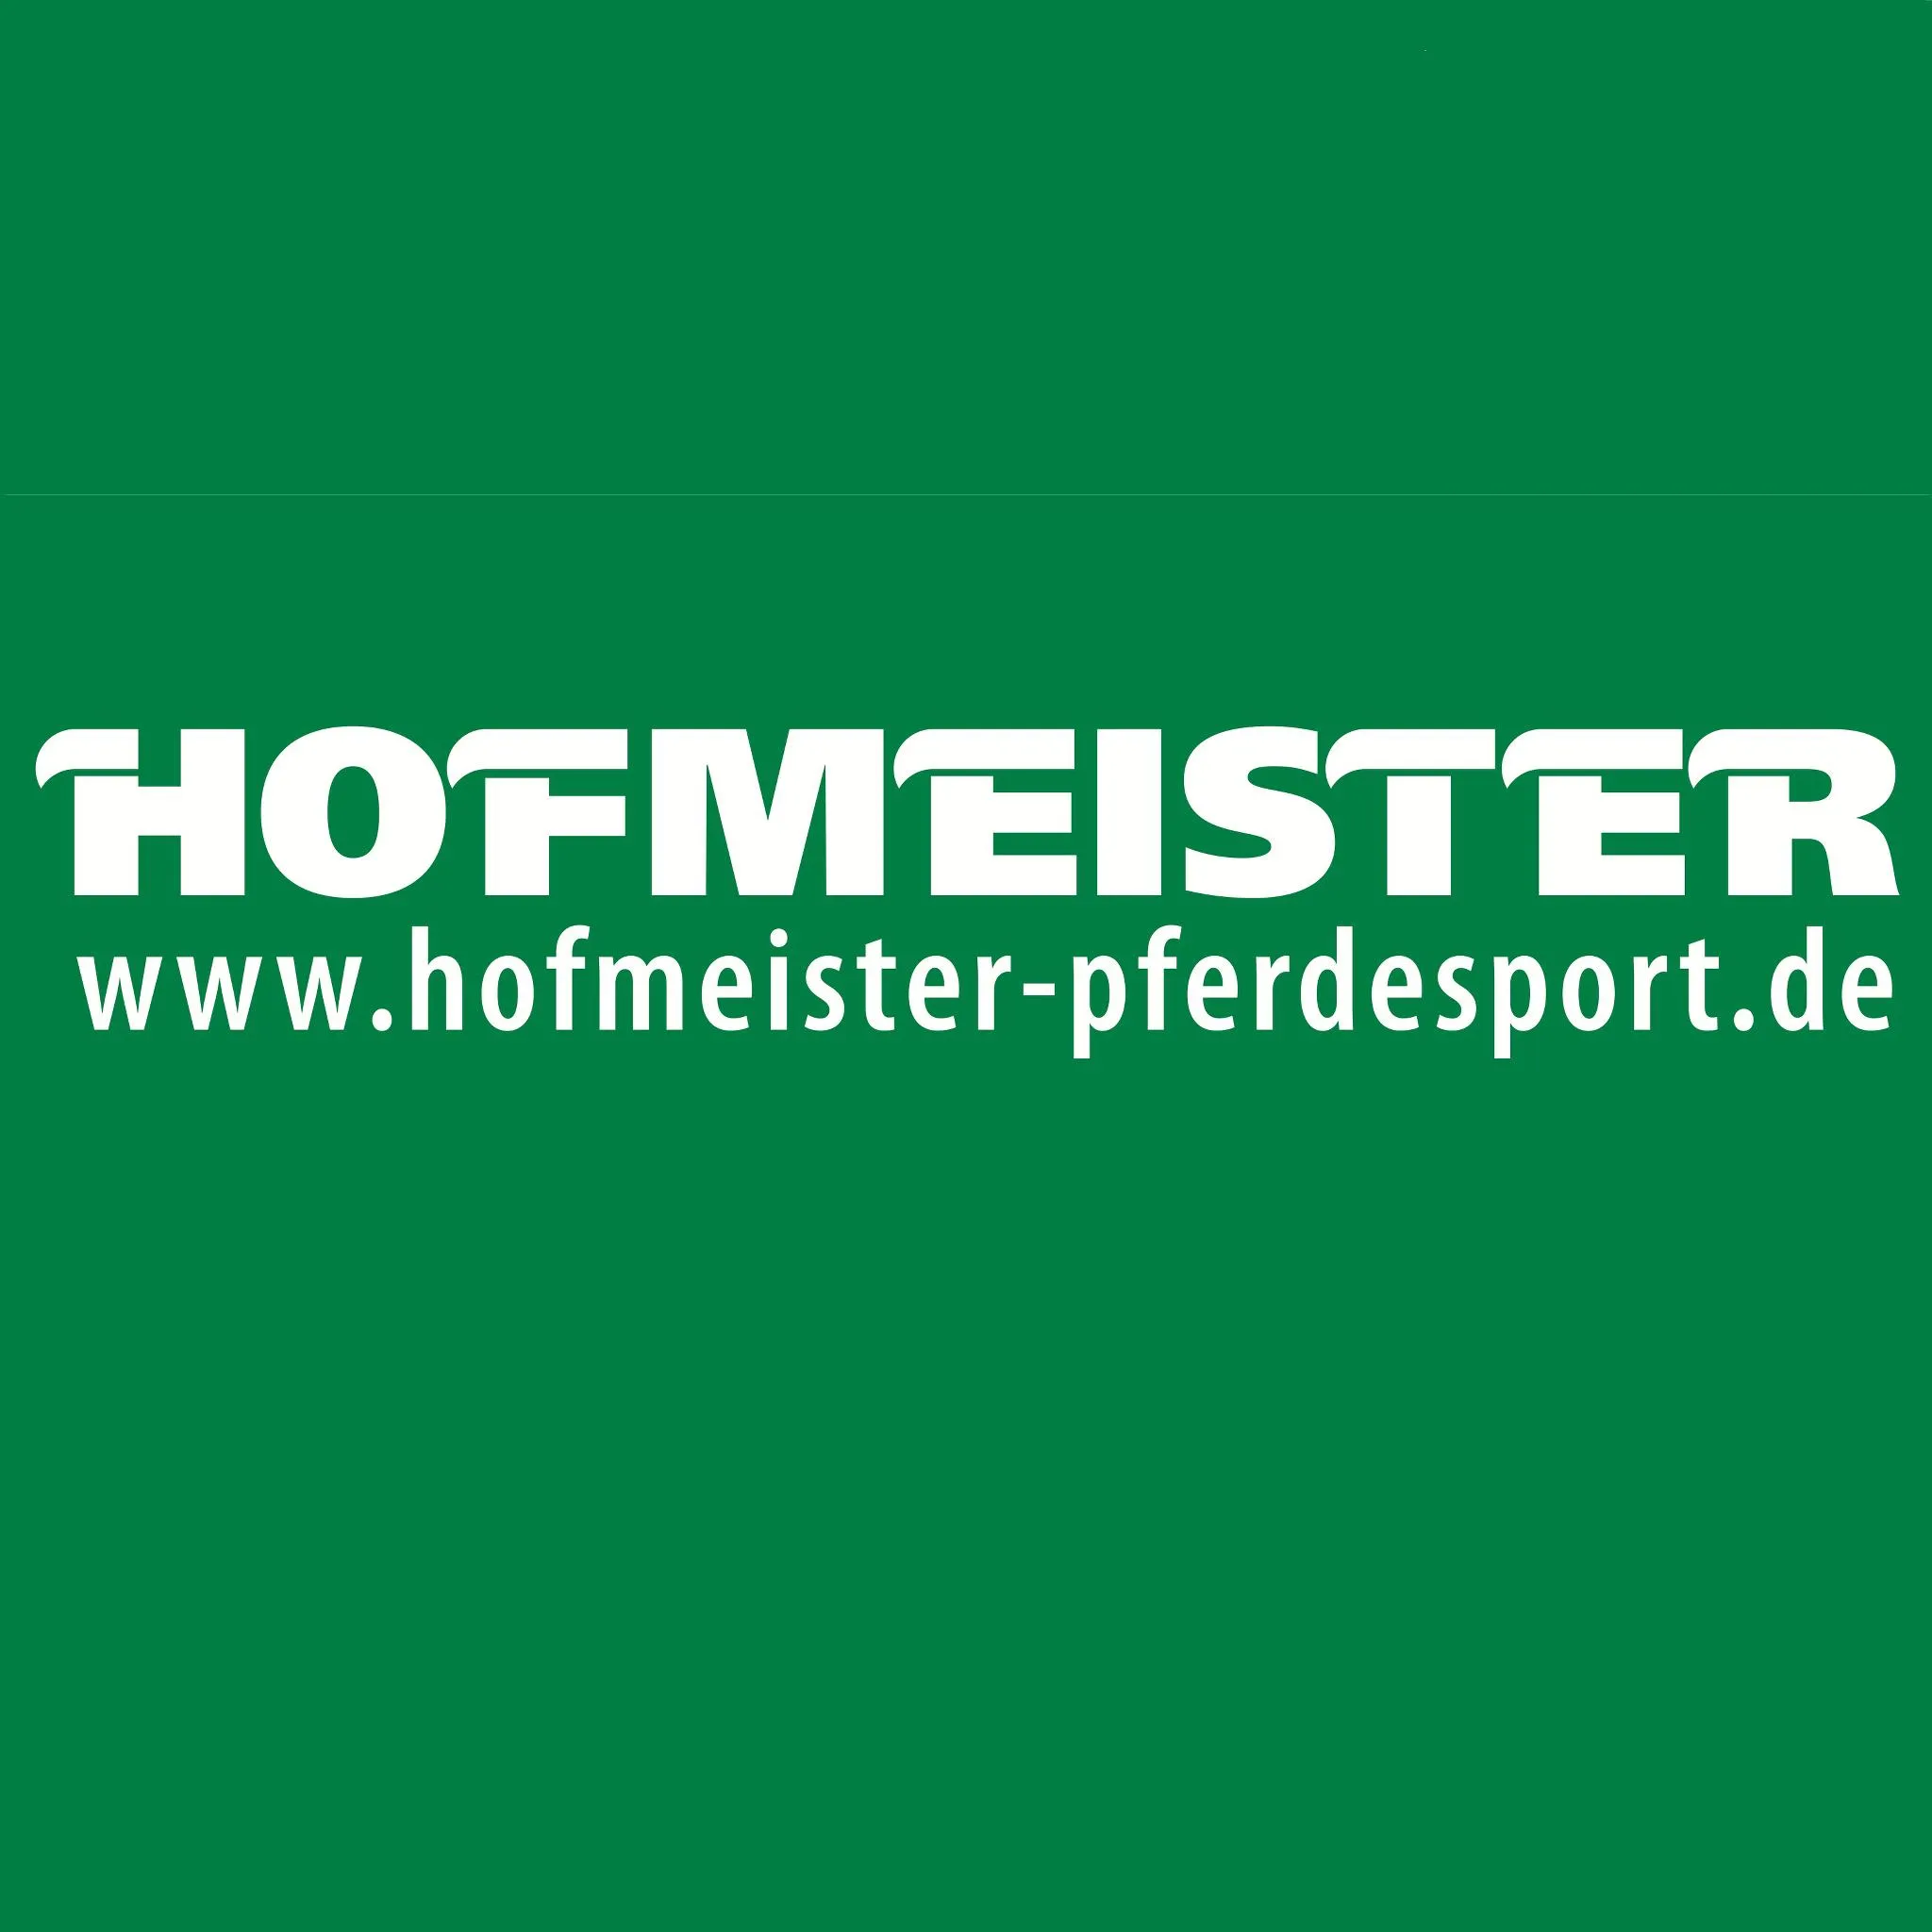 hofmeister-pferdesport.de